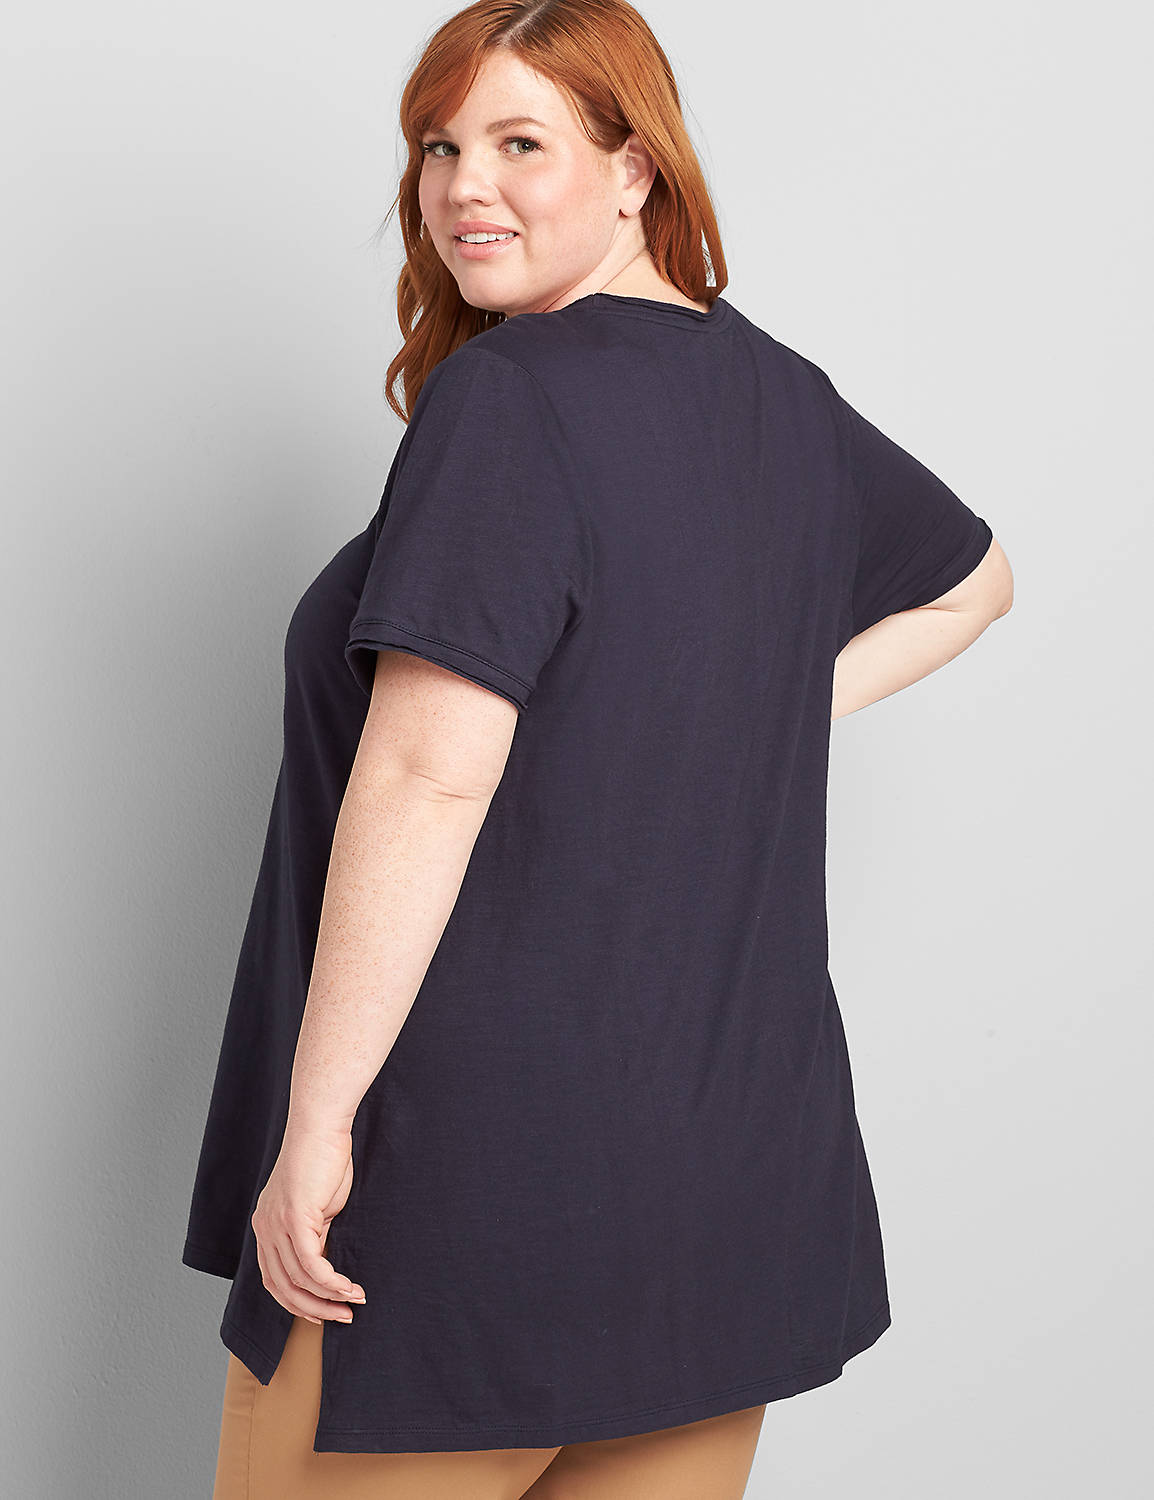 Short-Sleeve Tunic with Raw Edge Product Image 2